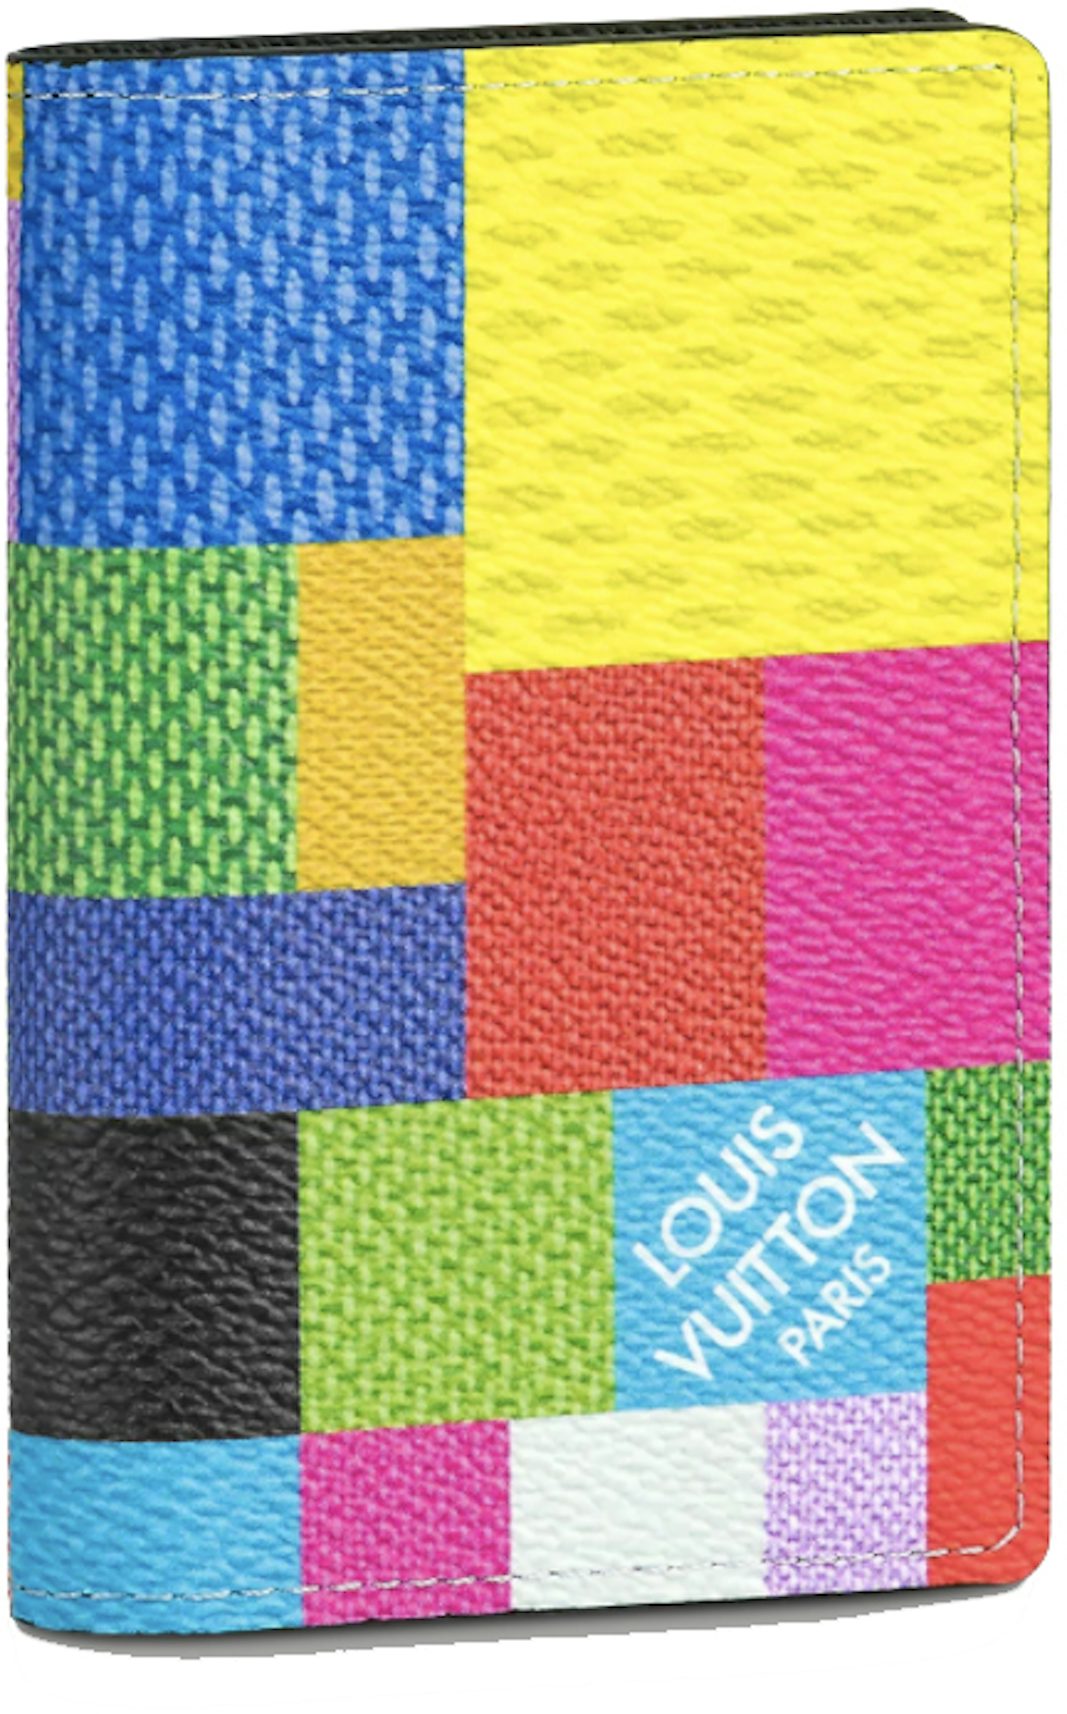 Louis Vuitton Pocket Organizer Multicolor in Coated CanvasLouis Vuitton  Pocket Organizer Multicolor in Coated Canvas - OFour